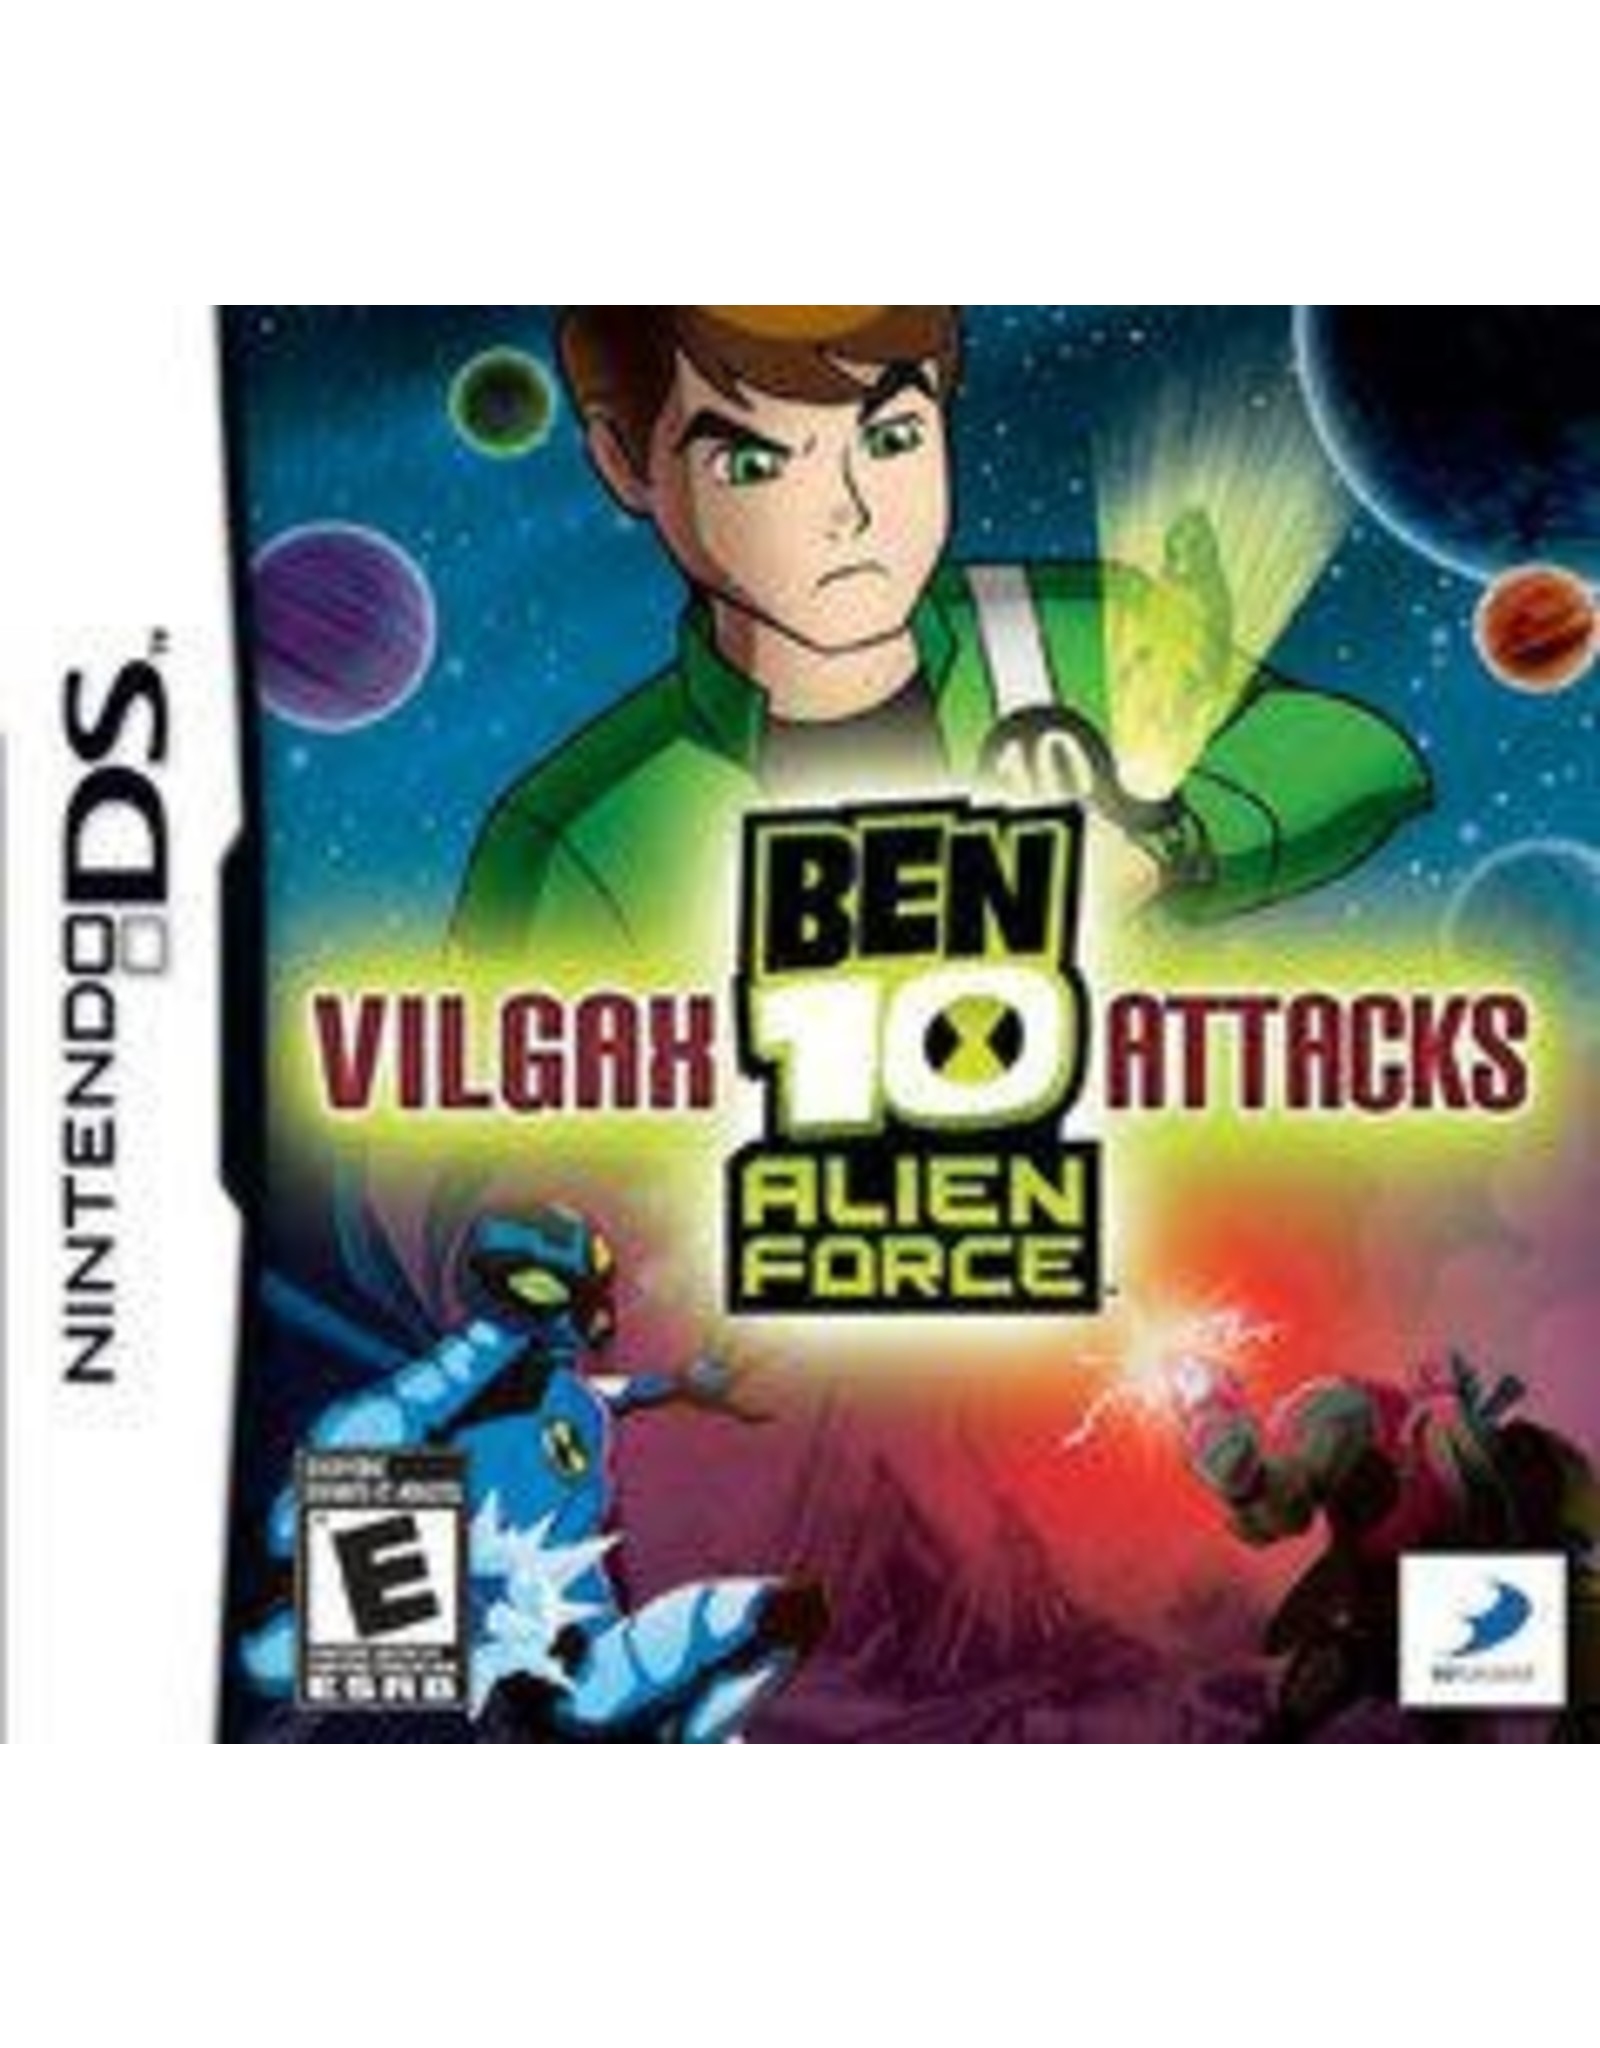 Nintendo DS Ben 10: Alien Force: Vilgax Attacks (CiB)